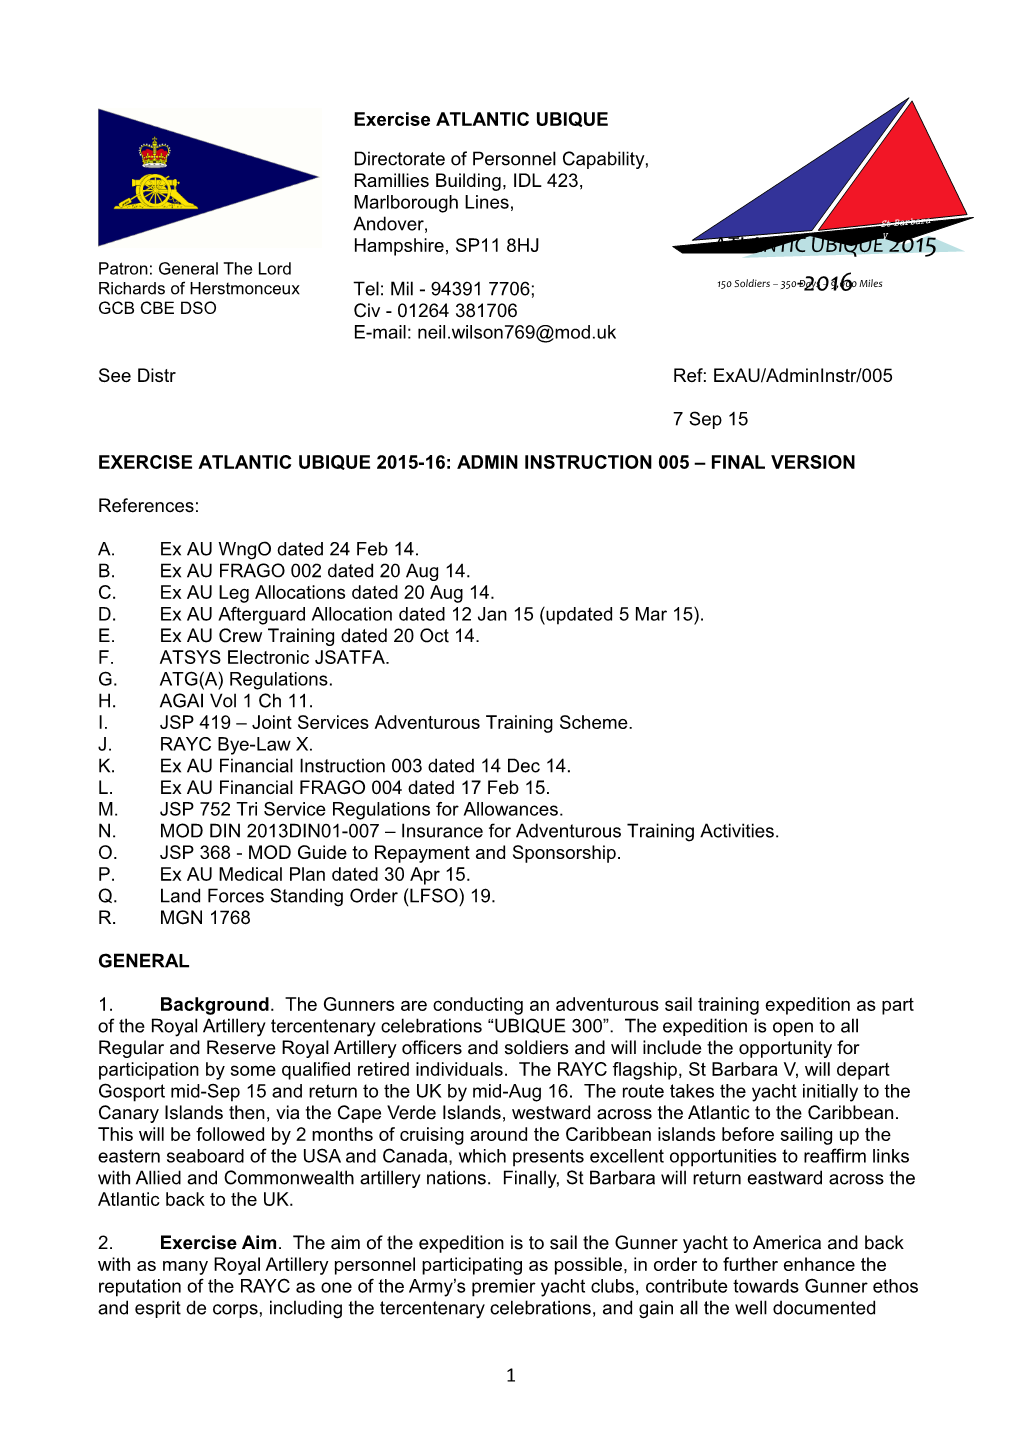 Exercise Atlantic Ubique 2015-16: Admin Instruction 005 Final Version